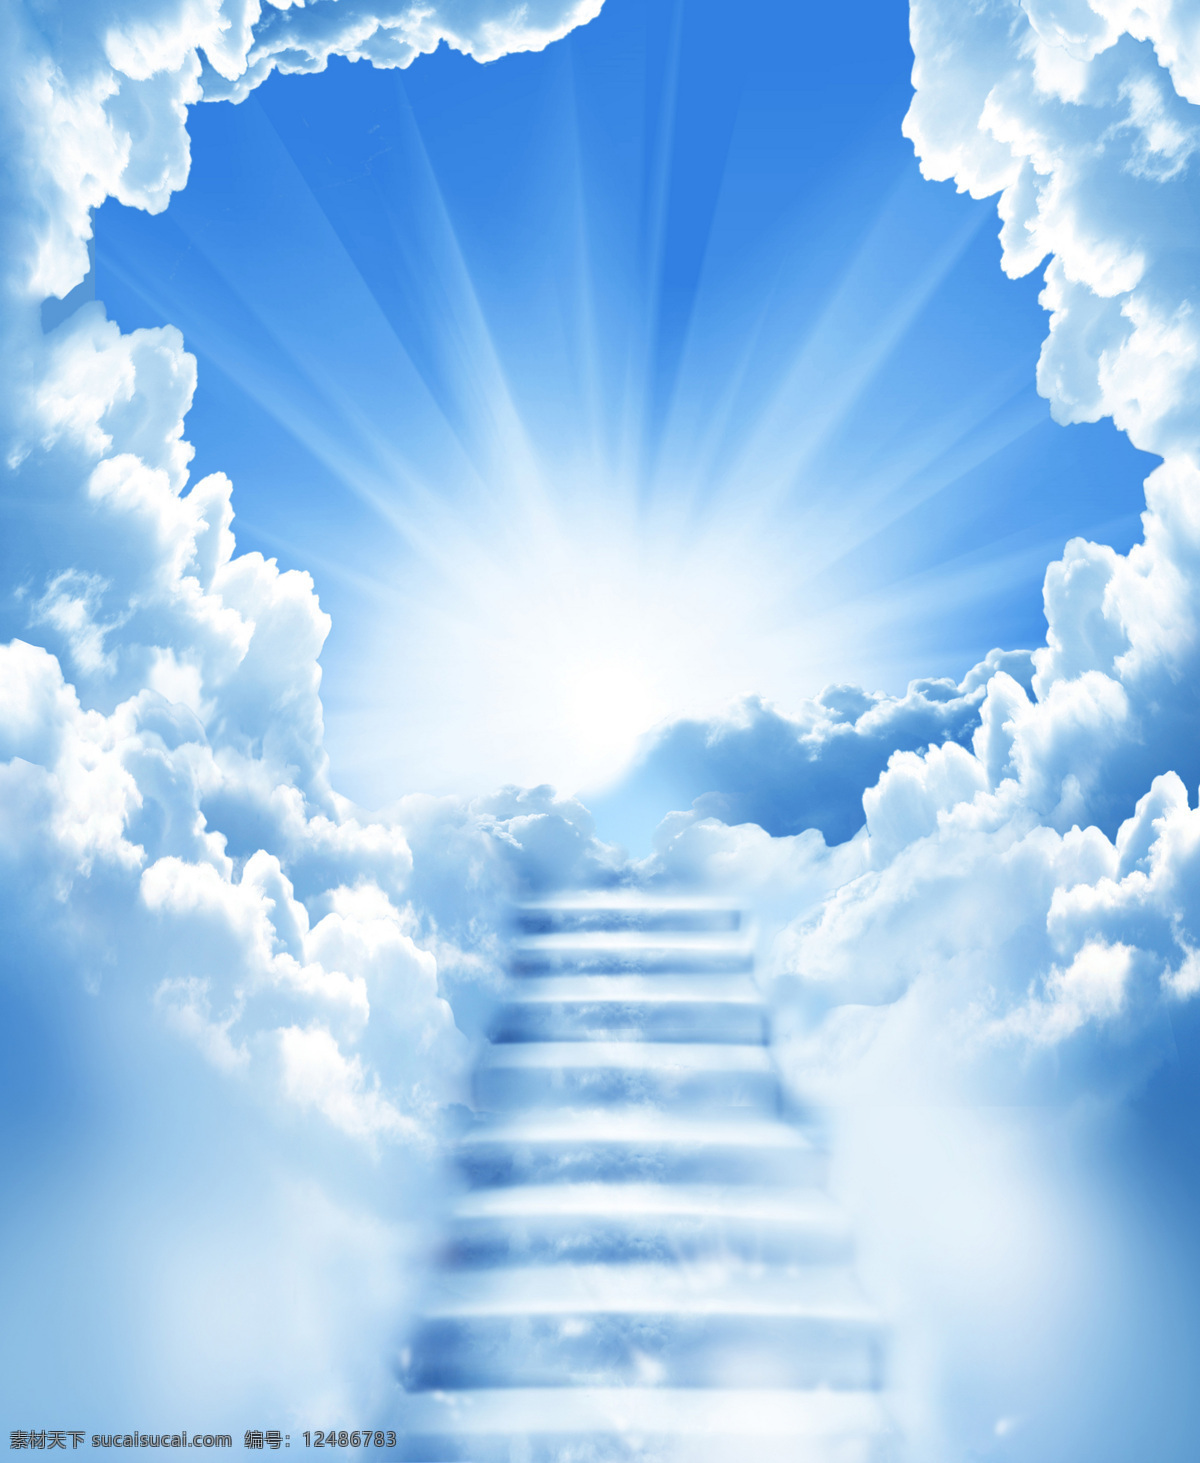 蓝天 白云 天空 之路 蓝天白云 云团 云朵 云彩 阶梯 楼梯 台阶 天堂之路 阳光 光线 高清图片 风景图片